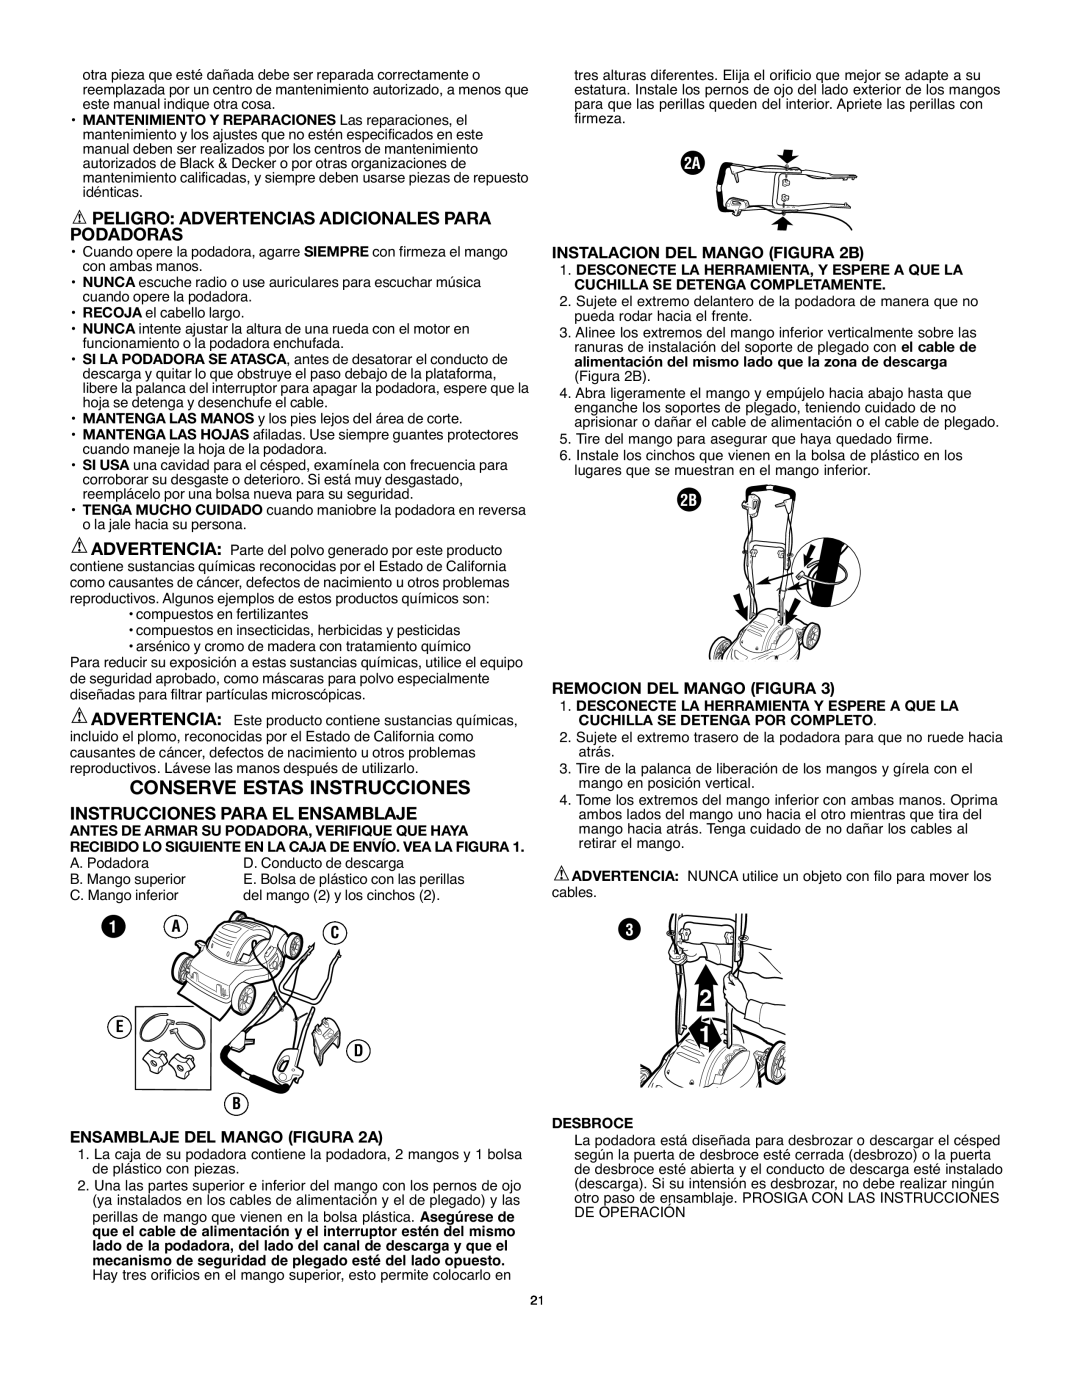 Black & Decker MM675 Conserve Estas Instrucciones, Peligro Advertencias Adicionales Para Podadoras, E D B, Desbroce 